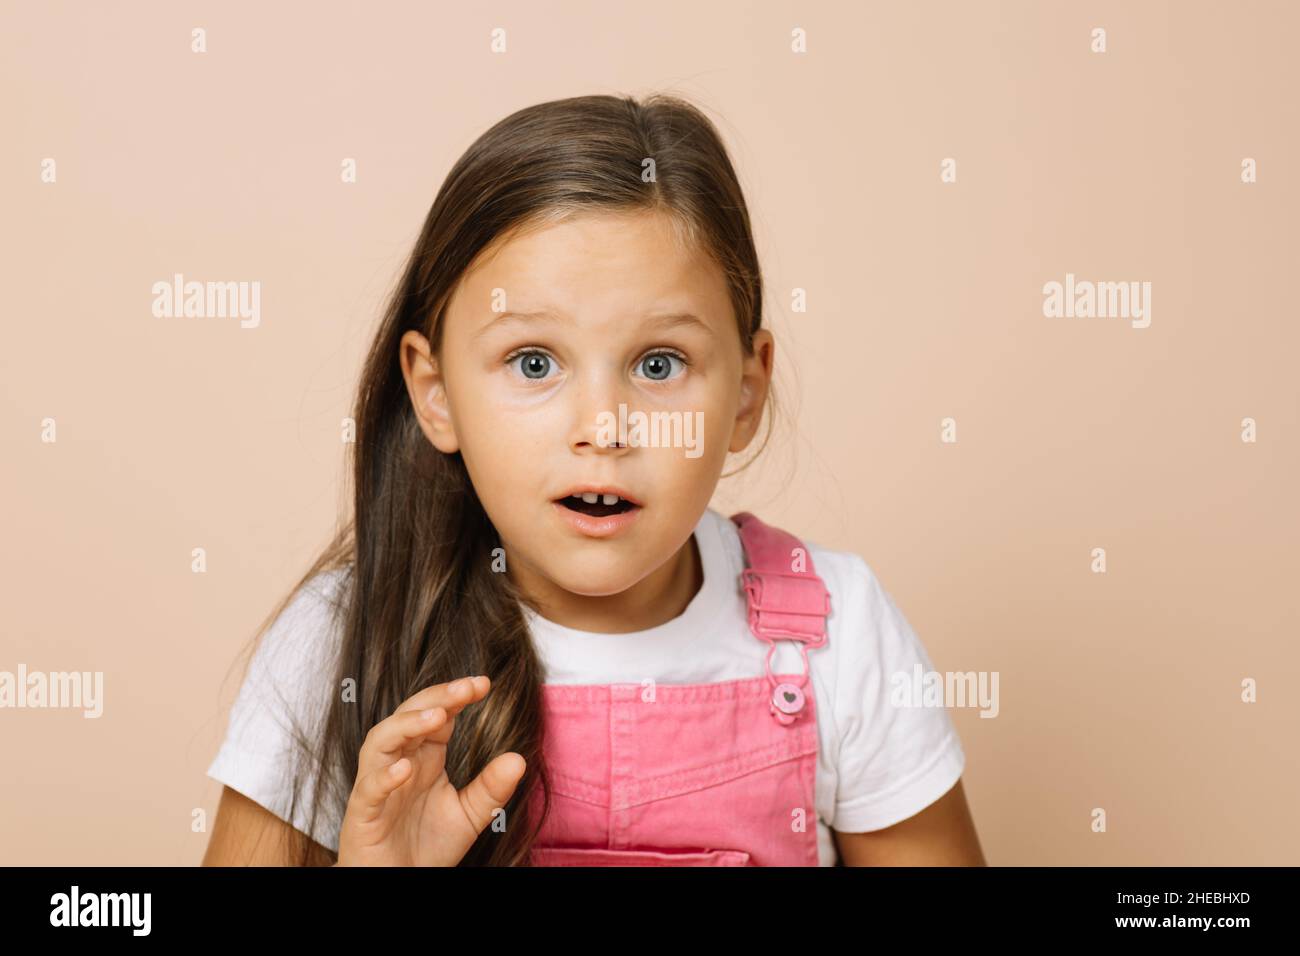 Ritratto del bambino con occhi rotondi sorpresi, bocca leggermente aperta e mano che alza guardando la macchina fotografica che indossa un tuta rosa brillante e una t-shirt bianca Foto Stock